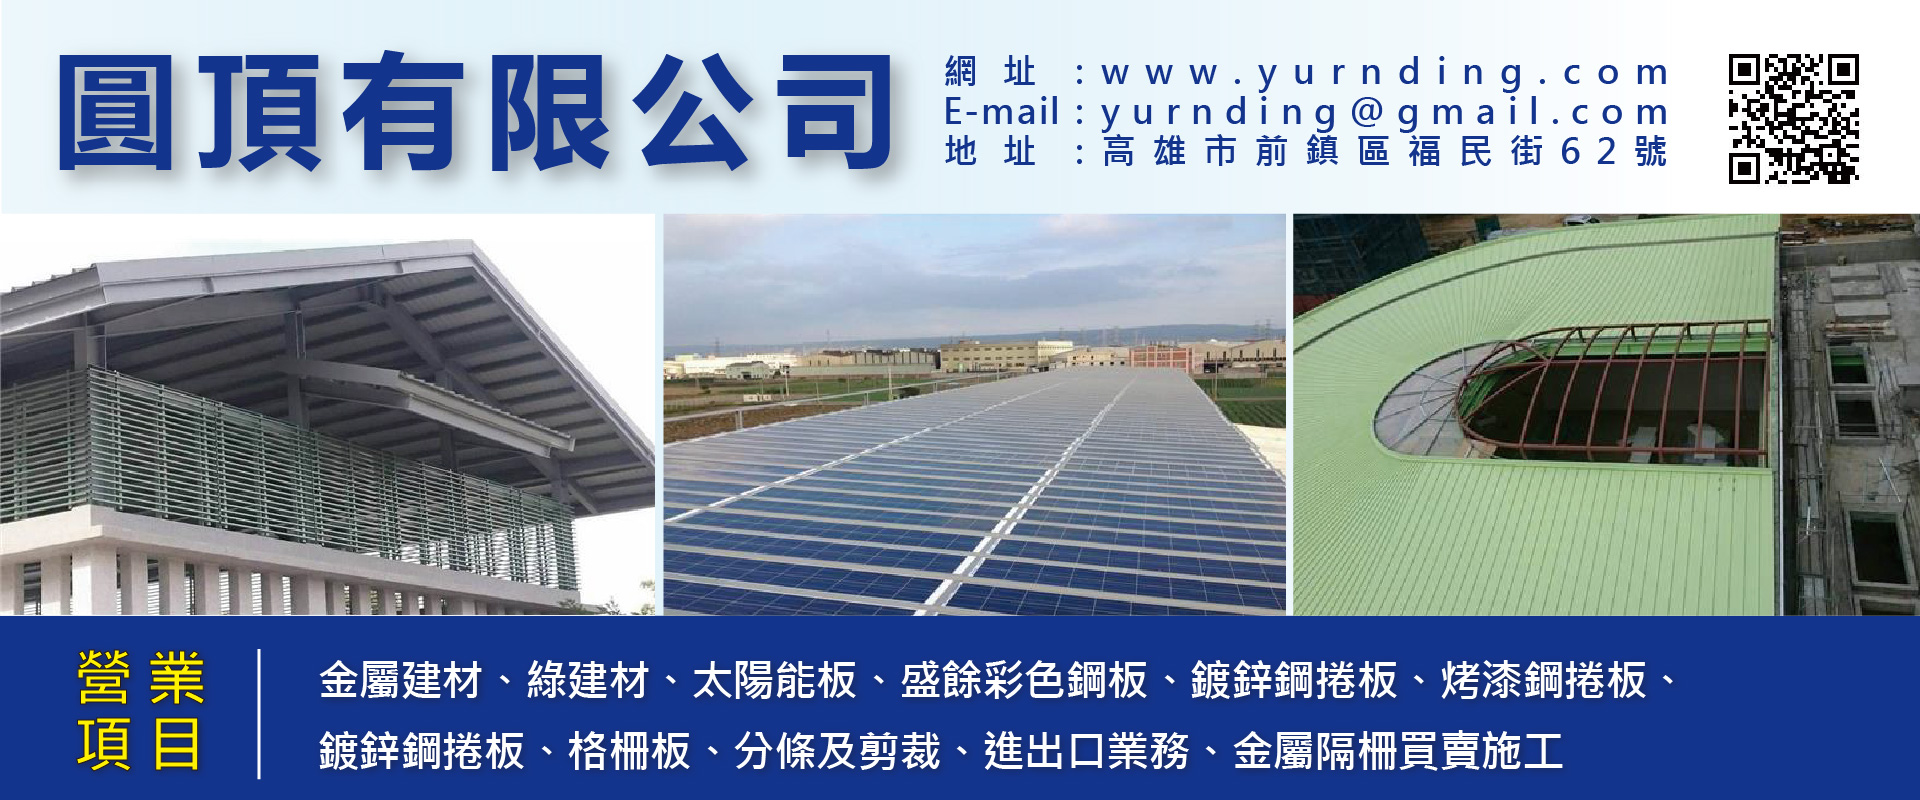 圓頂有限公司 - 高雄金屬建材,太陽能板,綠建材,盛餘彩色鋼板,鍍鋅鋼捲板